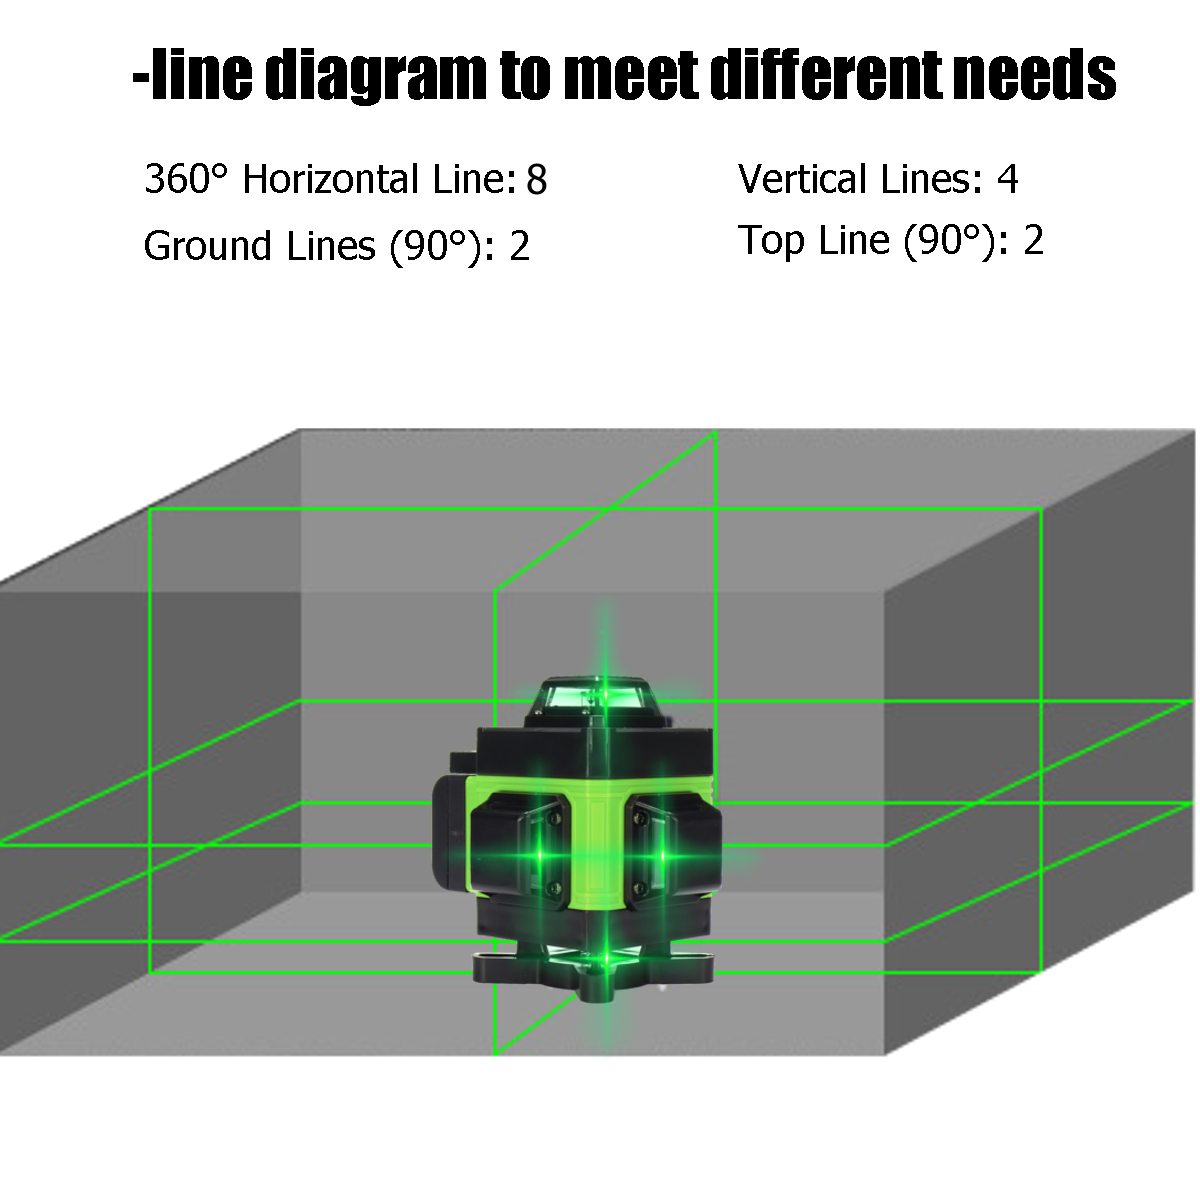 LED-Display-3D-360deg-16-Line-Green-Light-Laser-Level-Cross-Self-Leveling-Measure-Tool-1700669-11